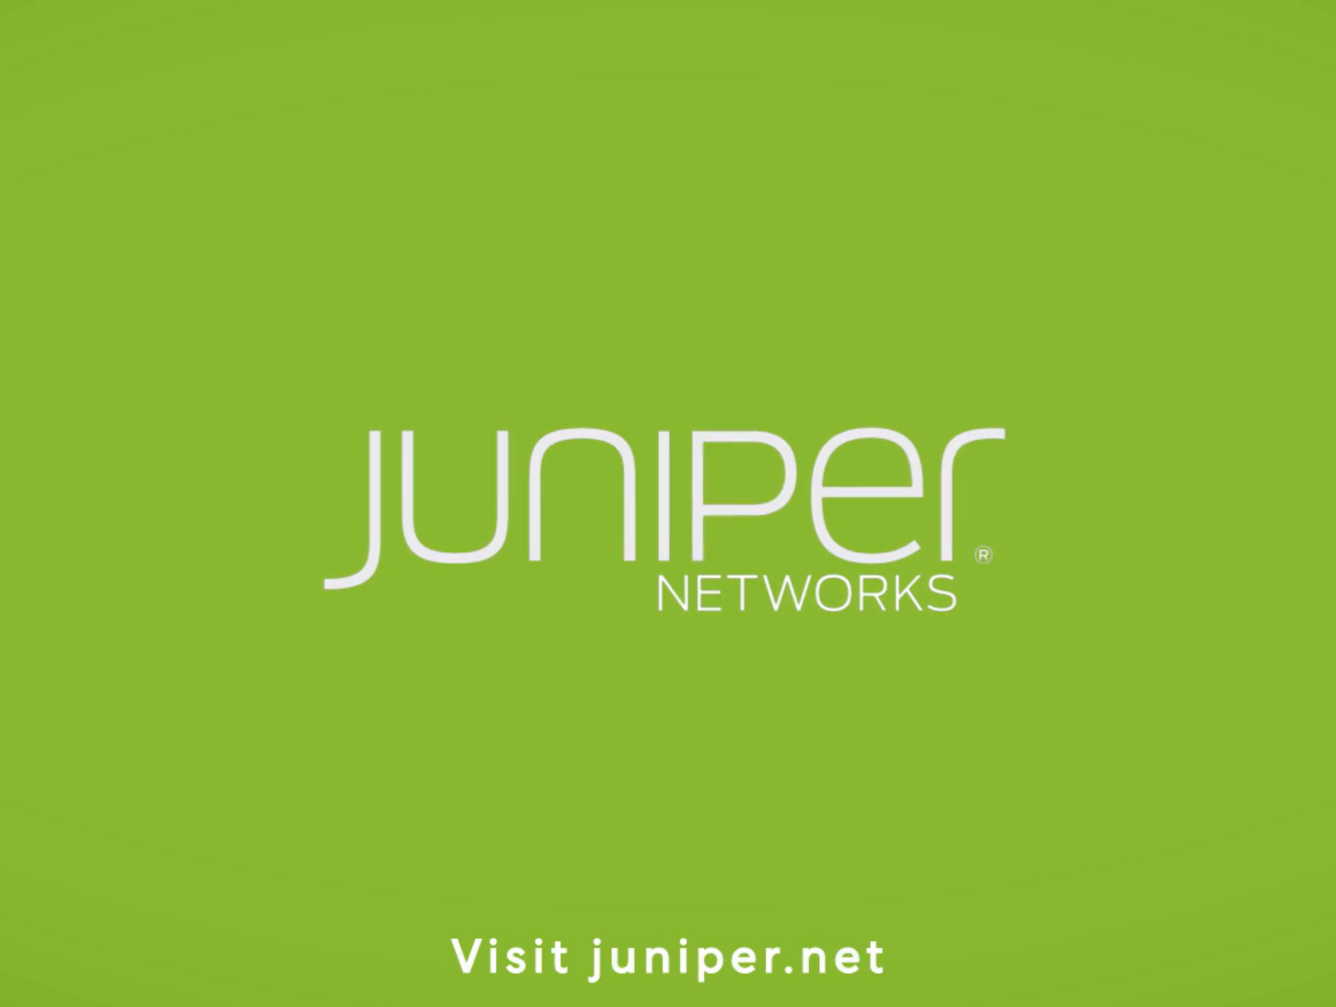 juniper networks adalah